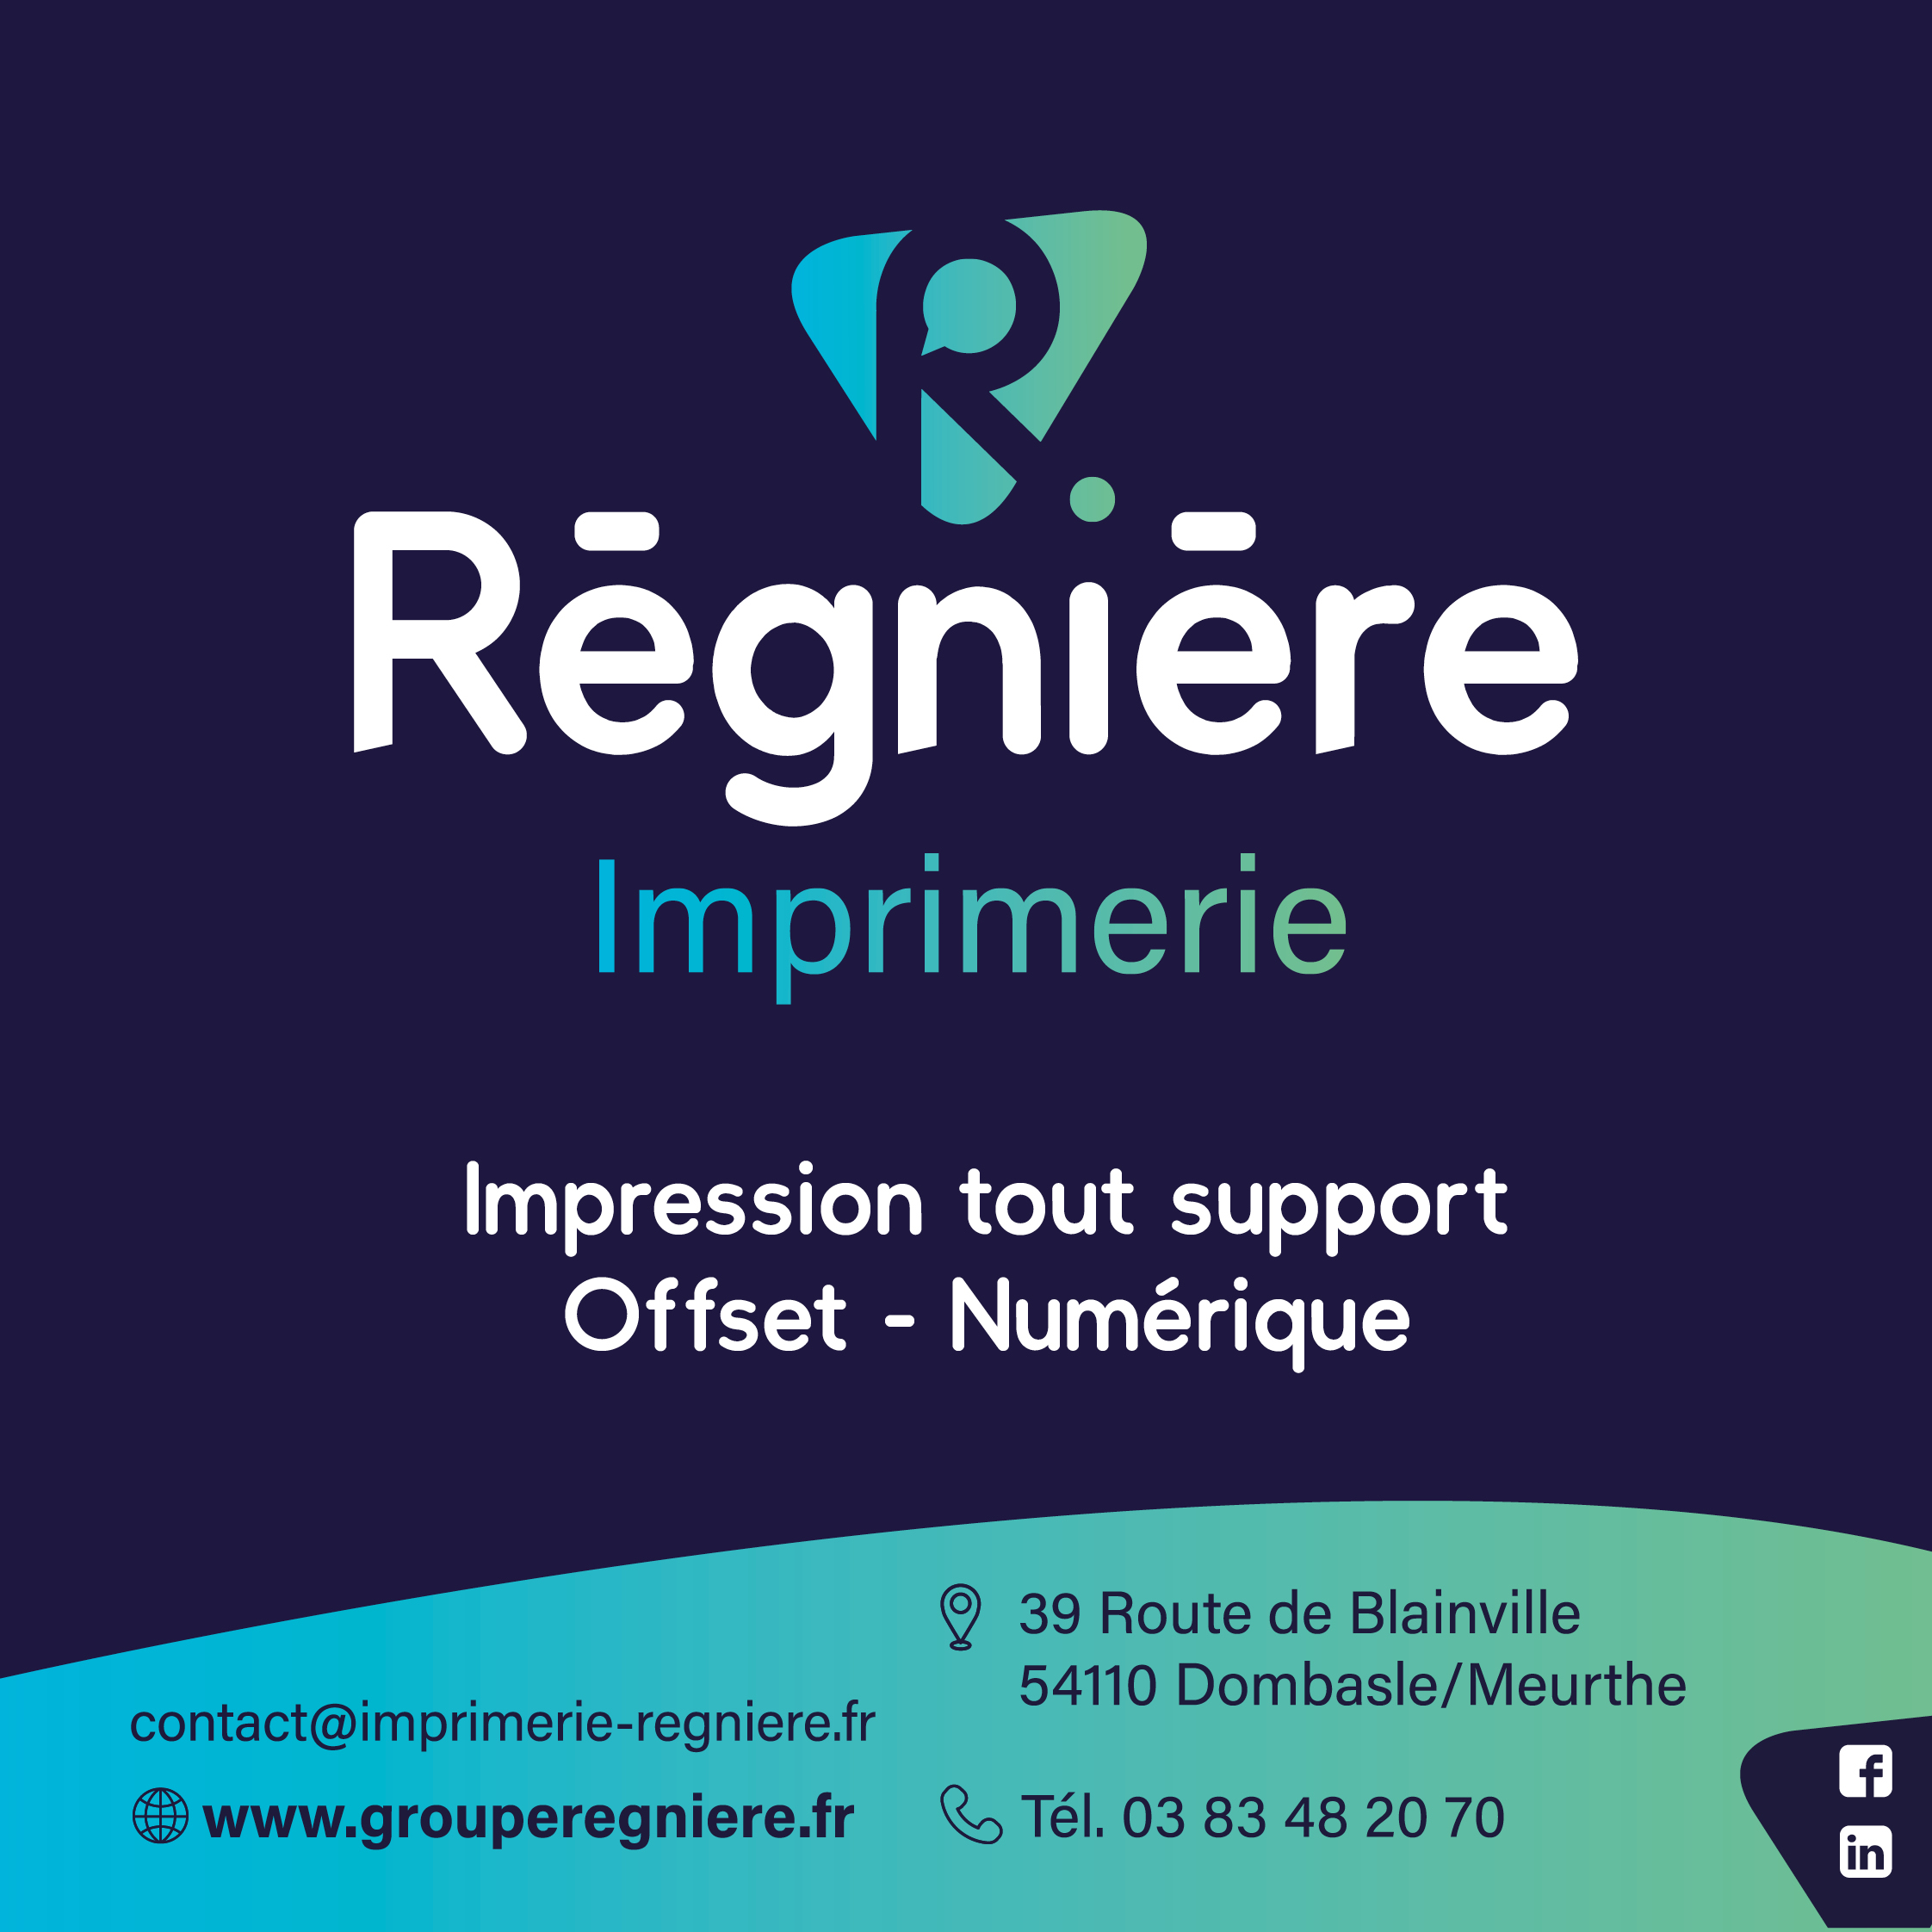 Imprimerie Régnière